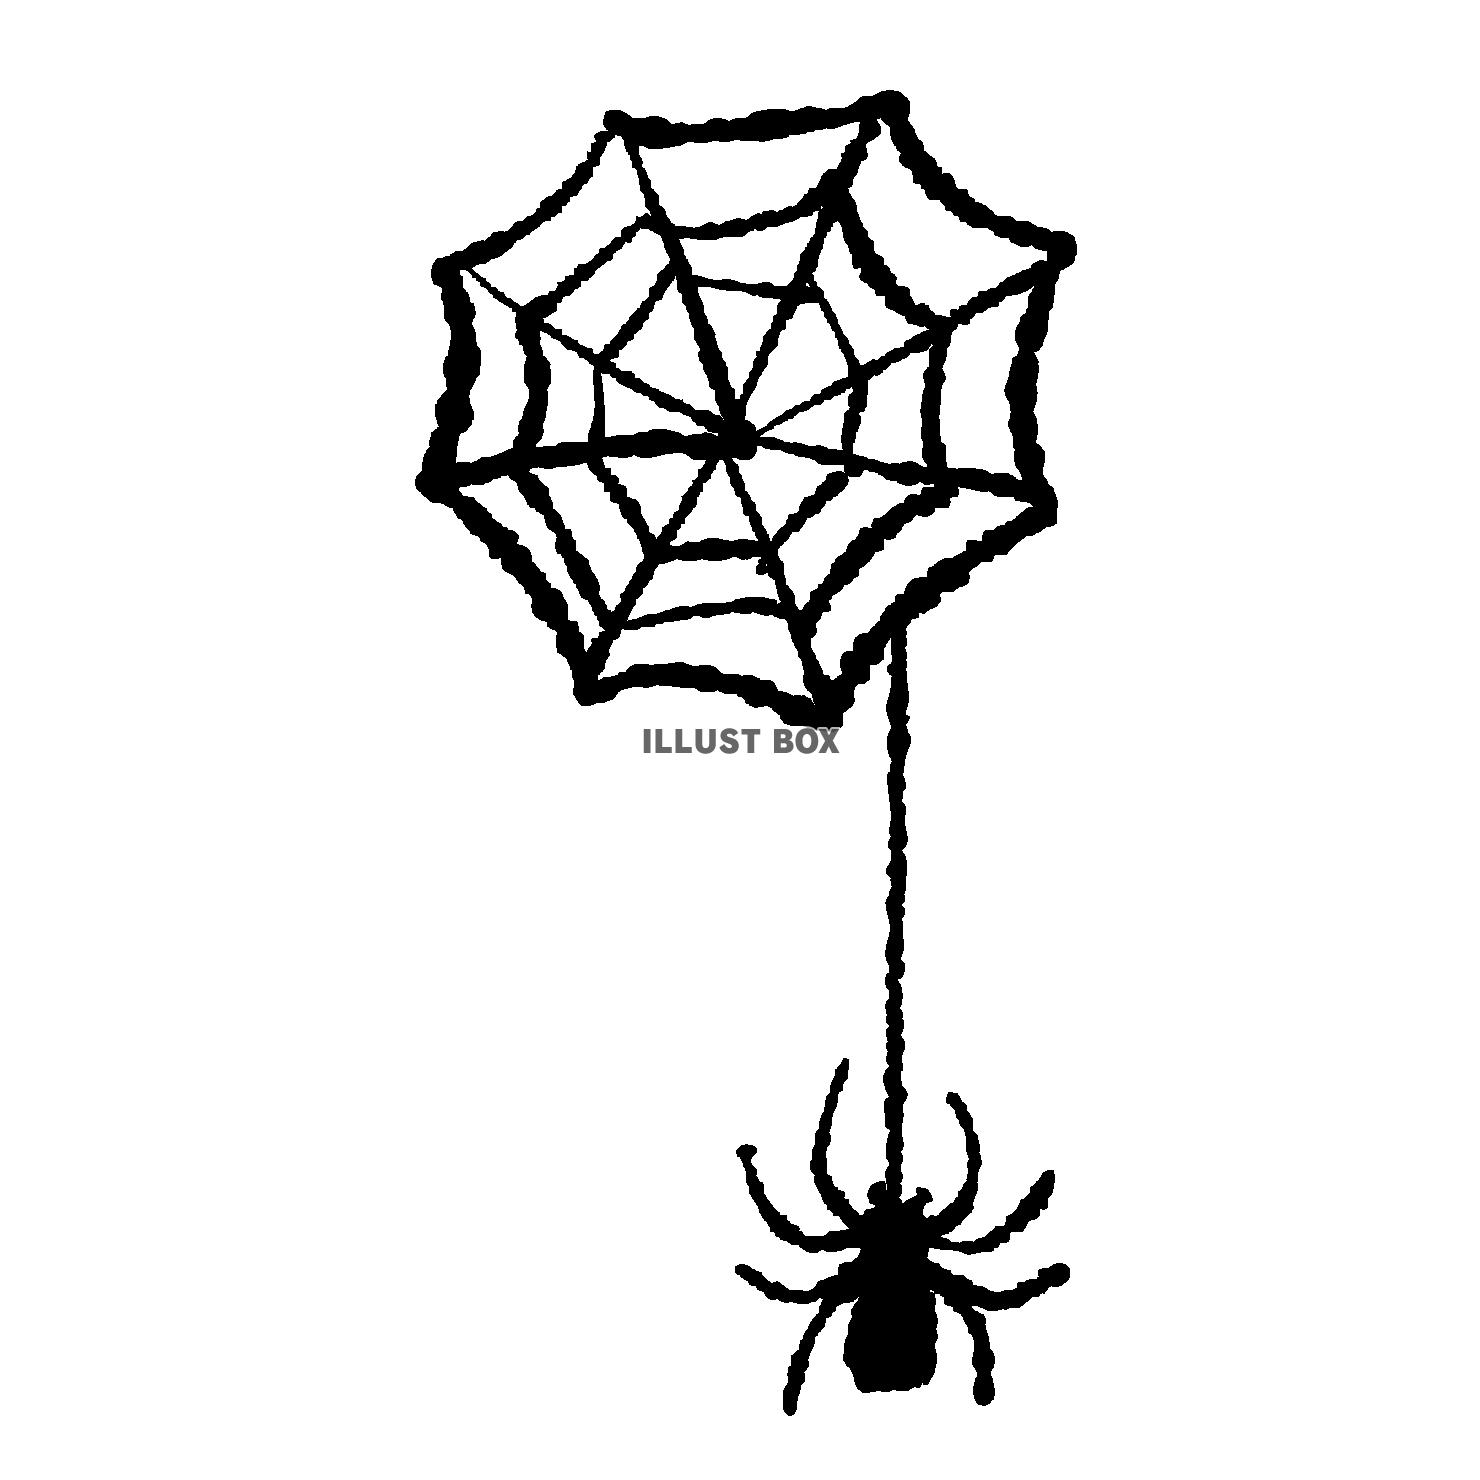 無料イラスト 蜘蛛の巣からぶら下がる蜘蛛のイラスト